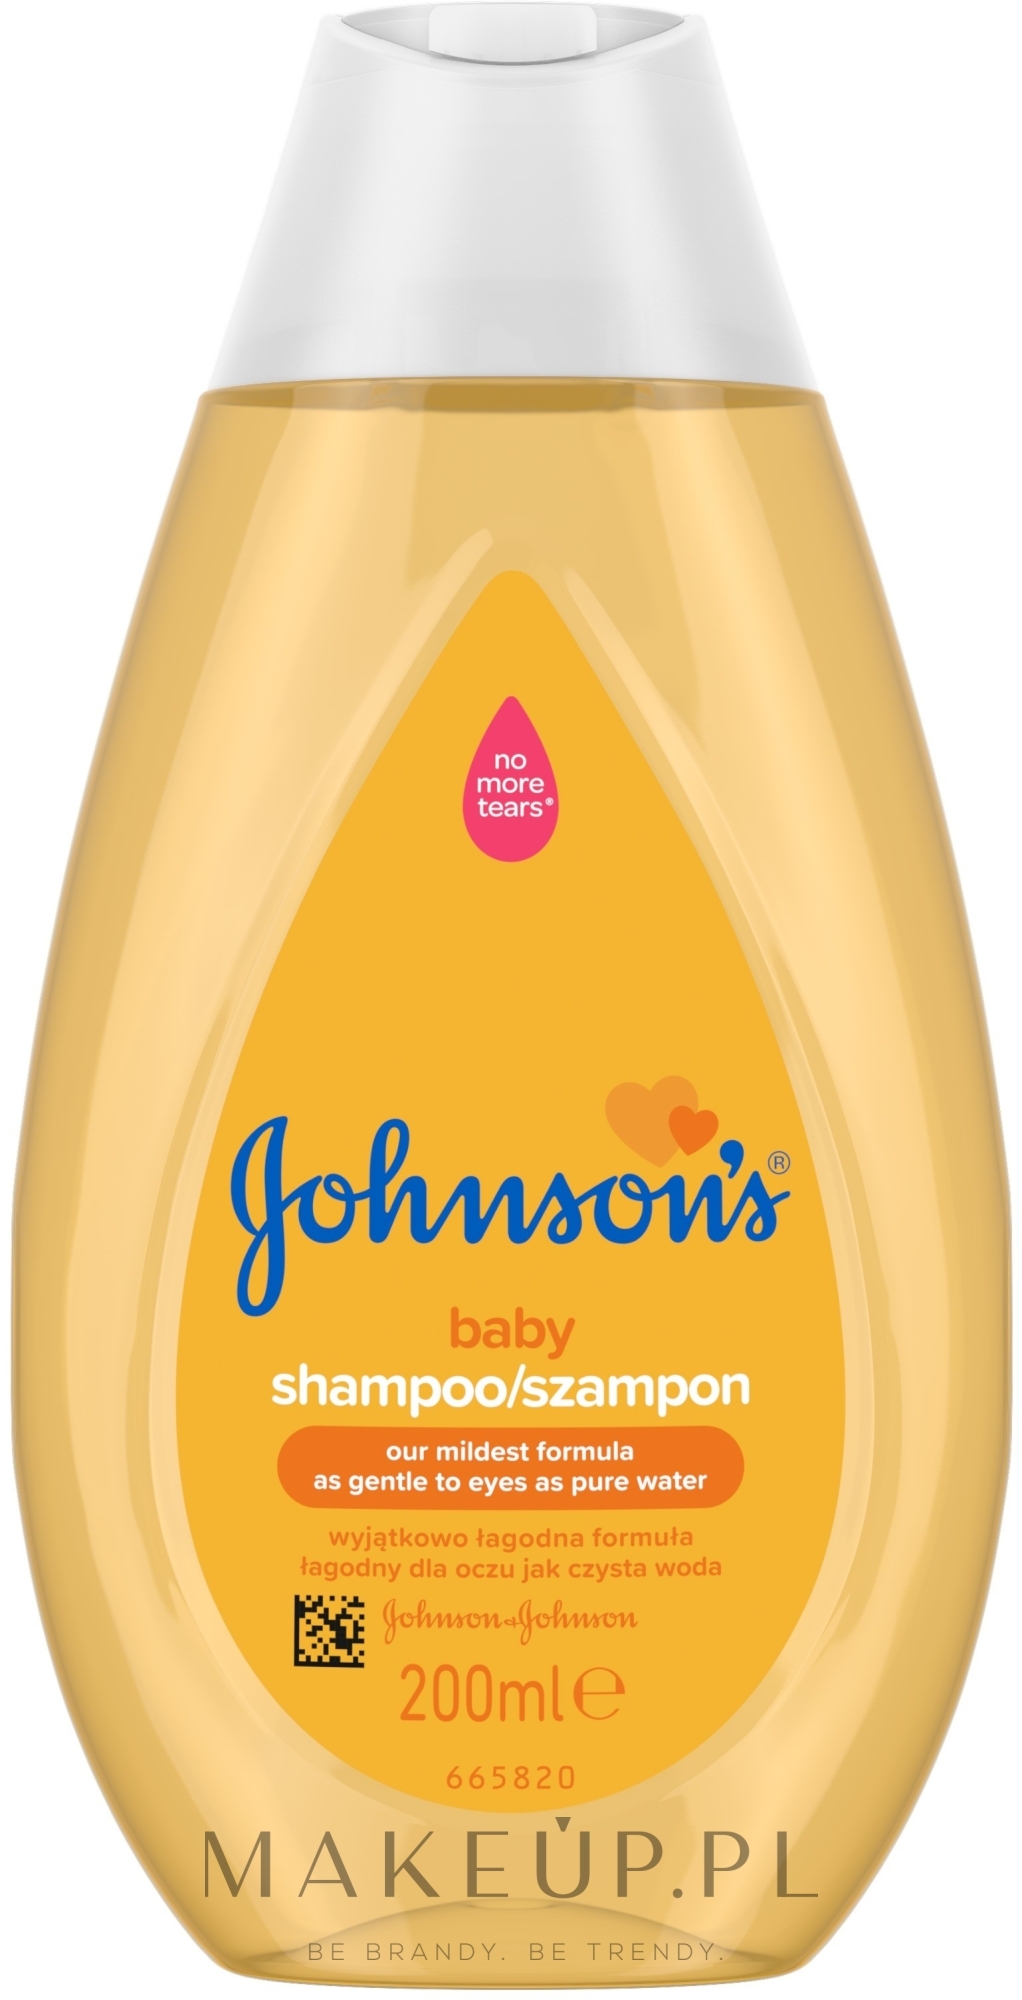 johnsons baby szampon po keratynowymprostowaniu